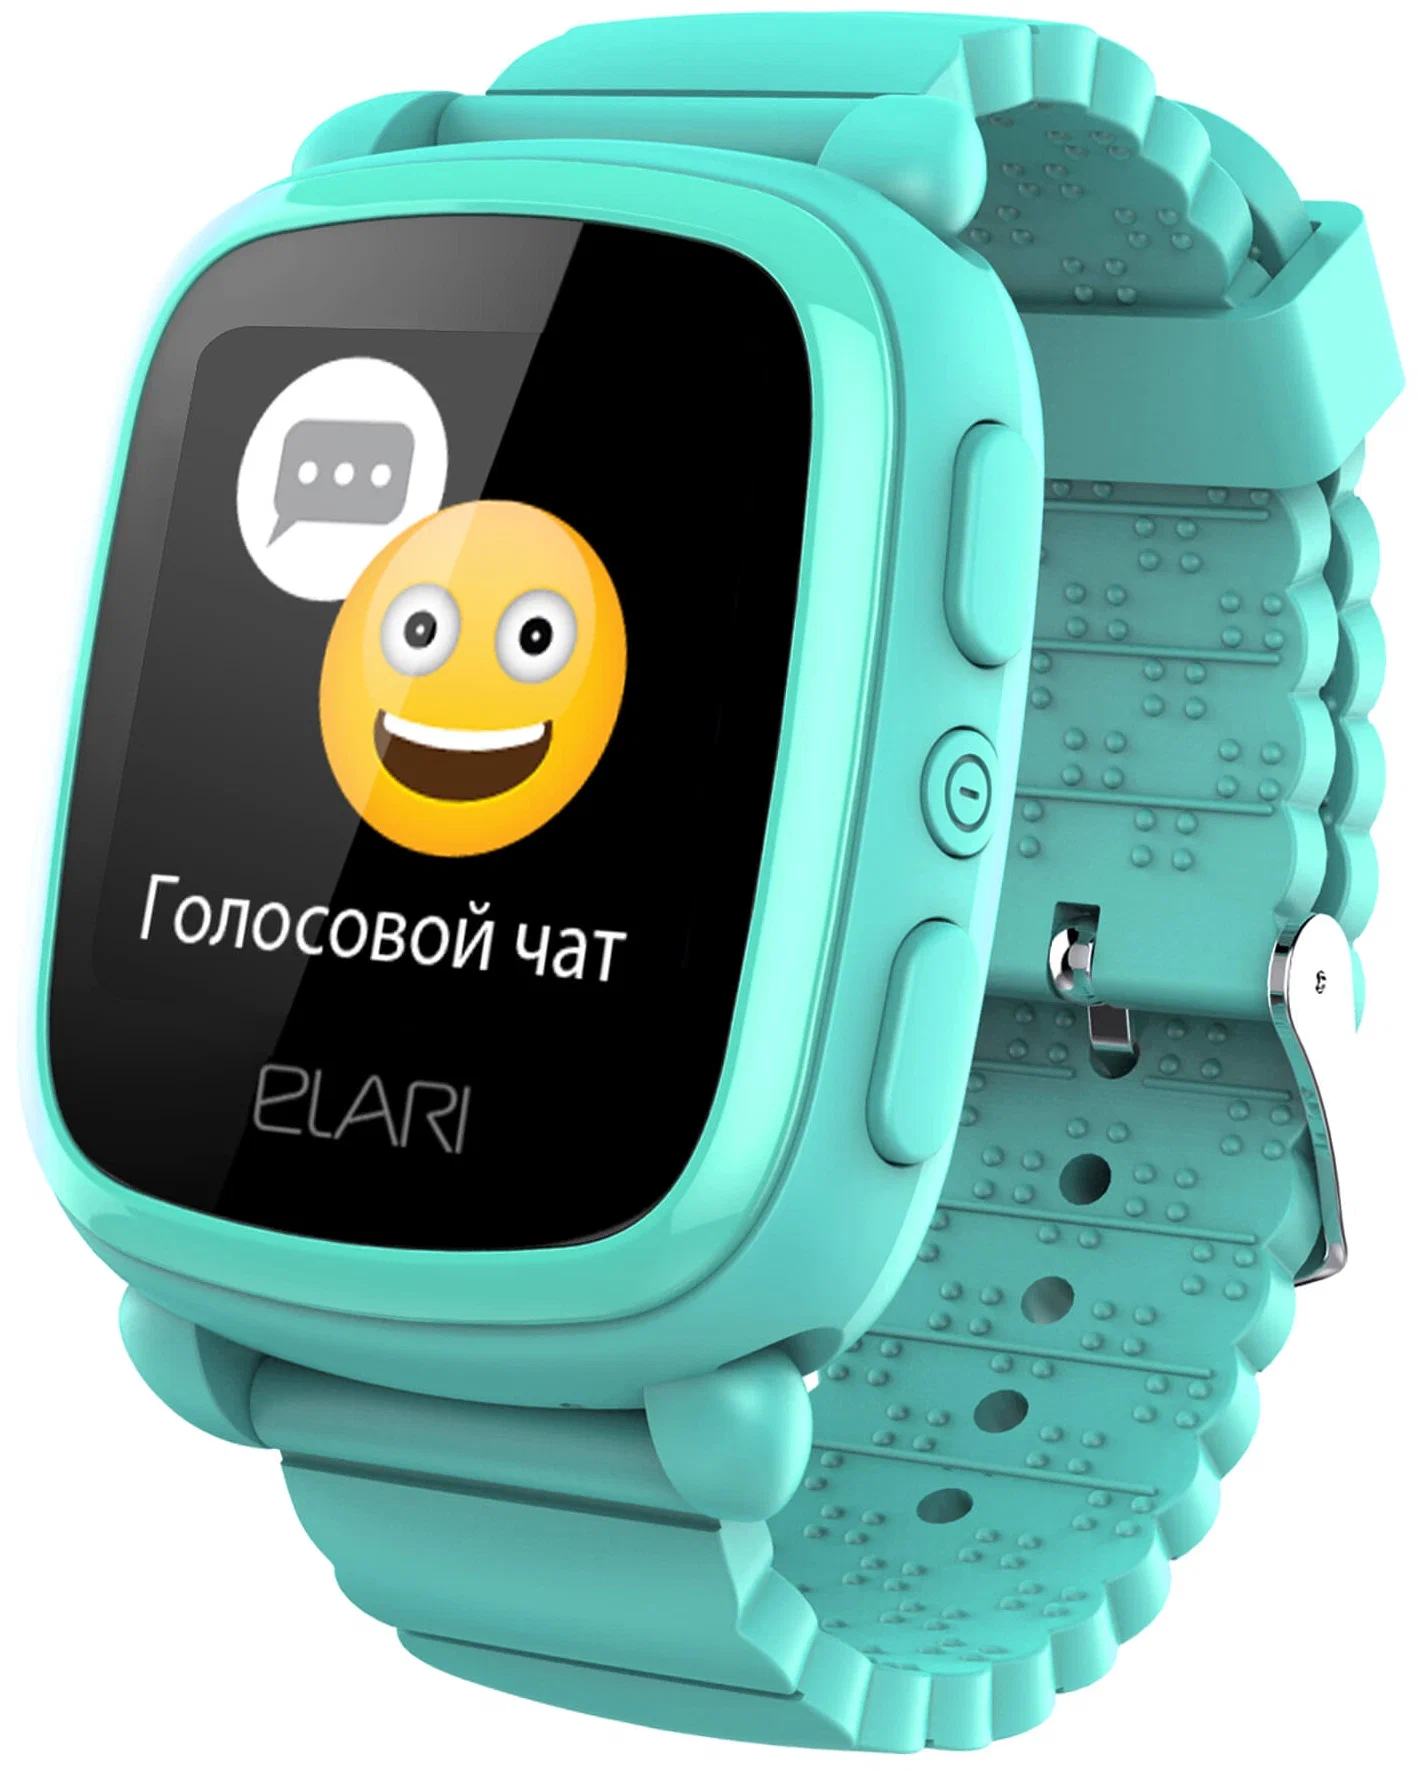 Детские смарт-часы Elari KidPhone 2 Зеленый в Челябинске купить по недорогим ценам с доставкой